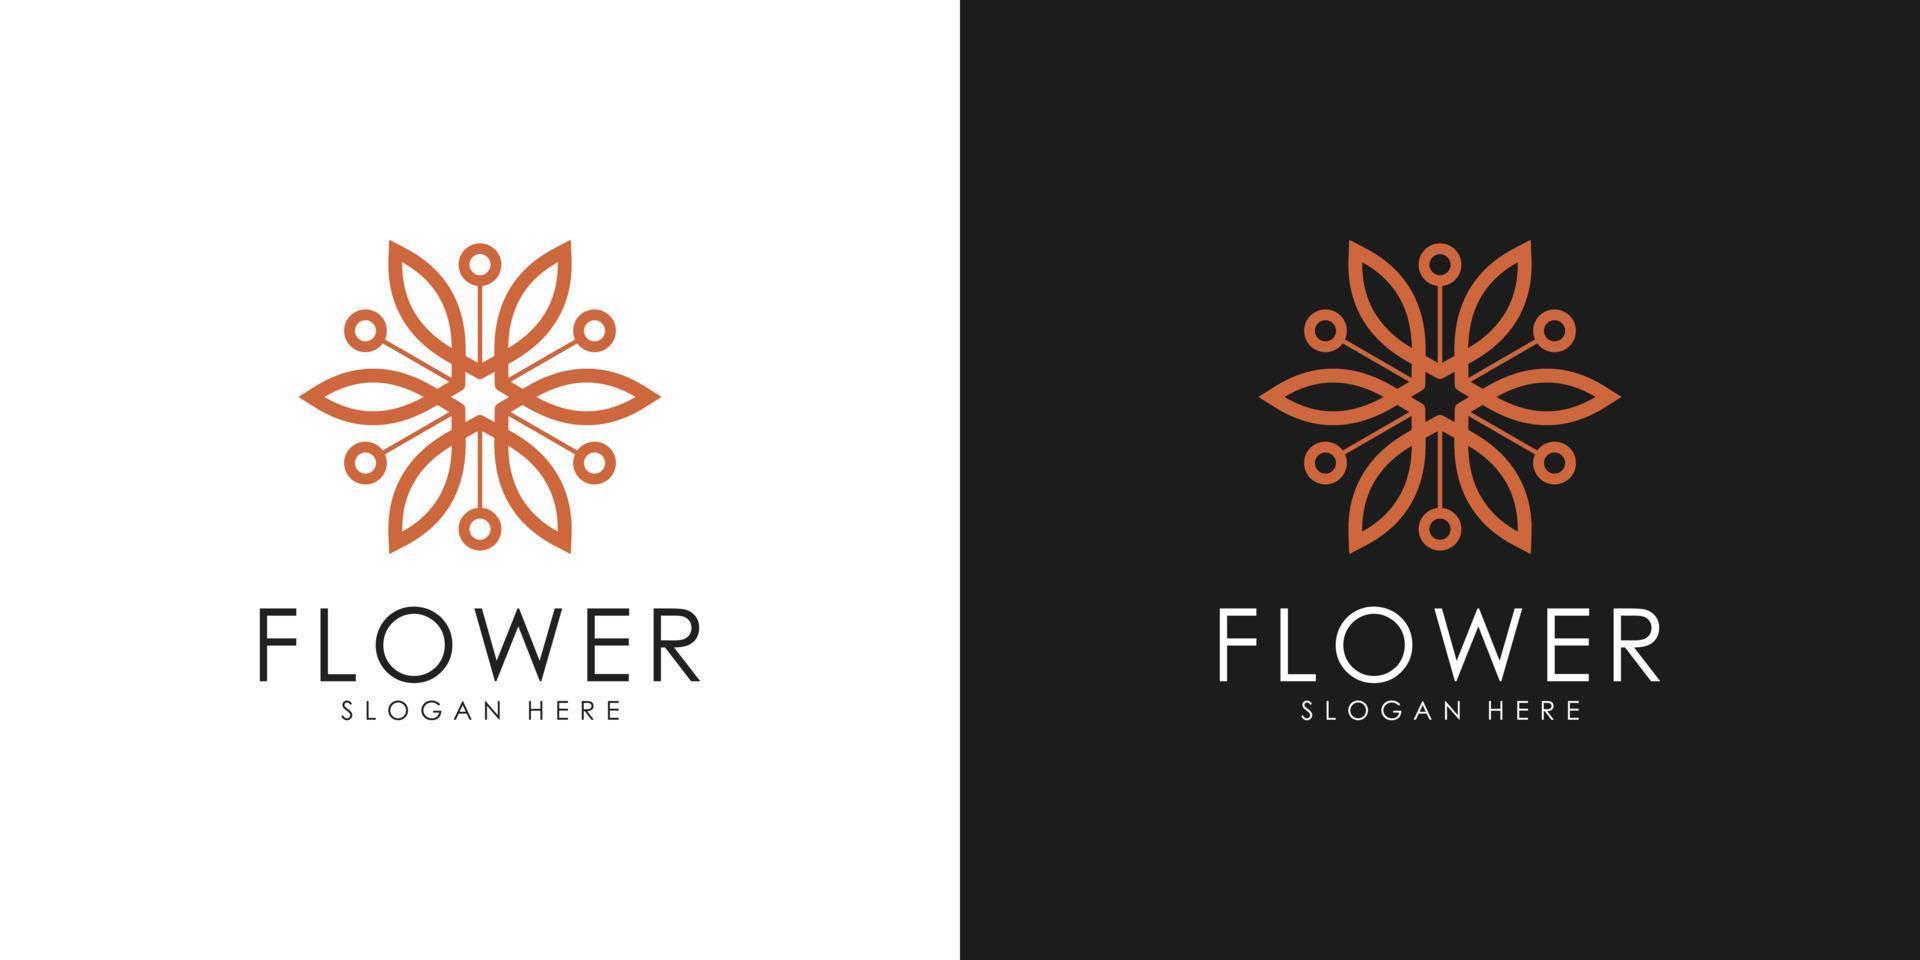 conception de vecteur icône logo fleur élégante abstraite